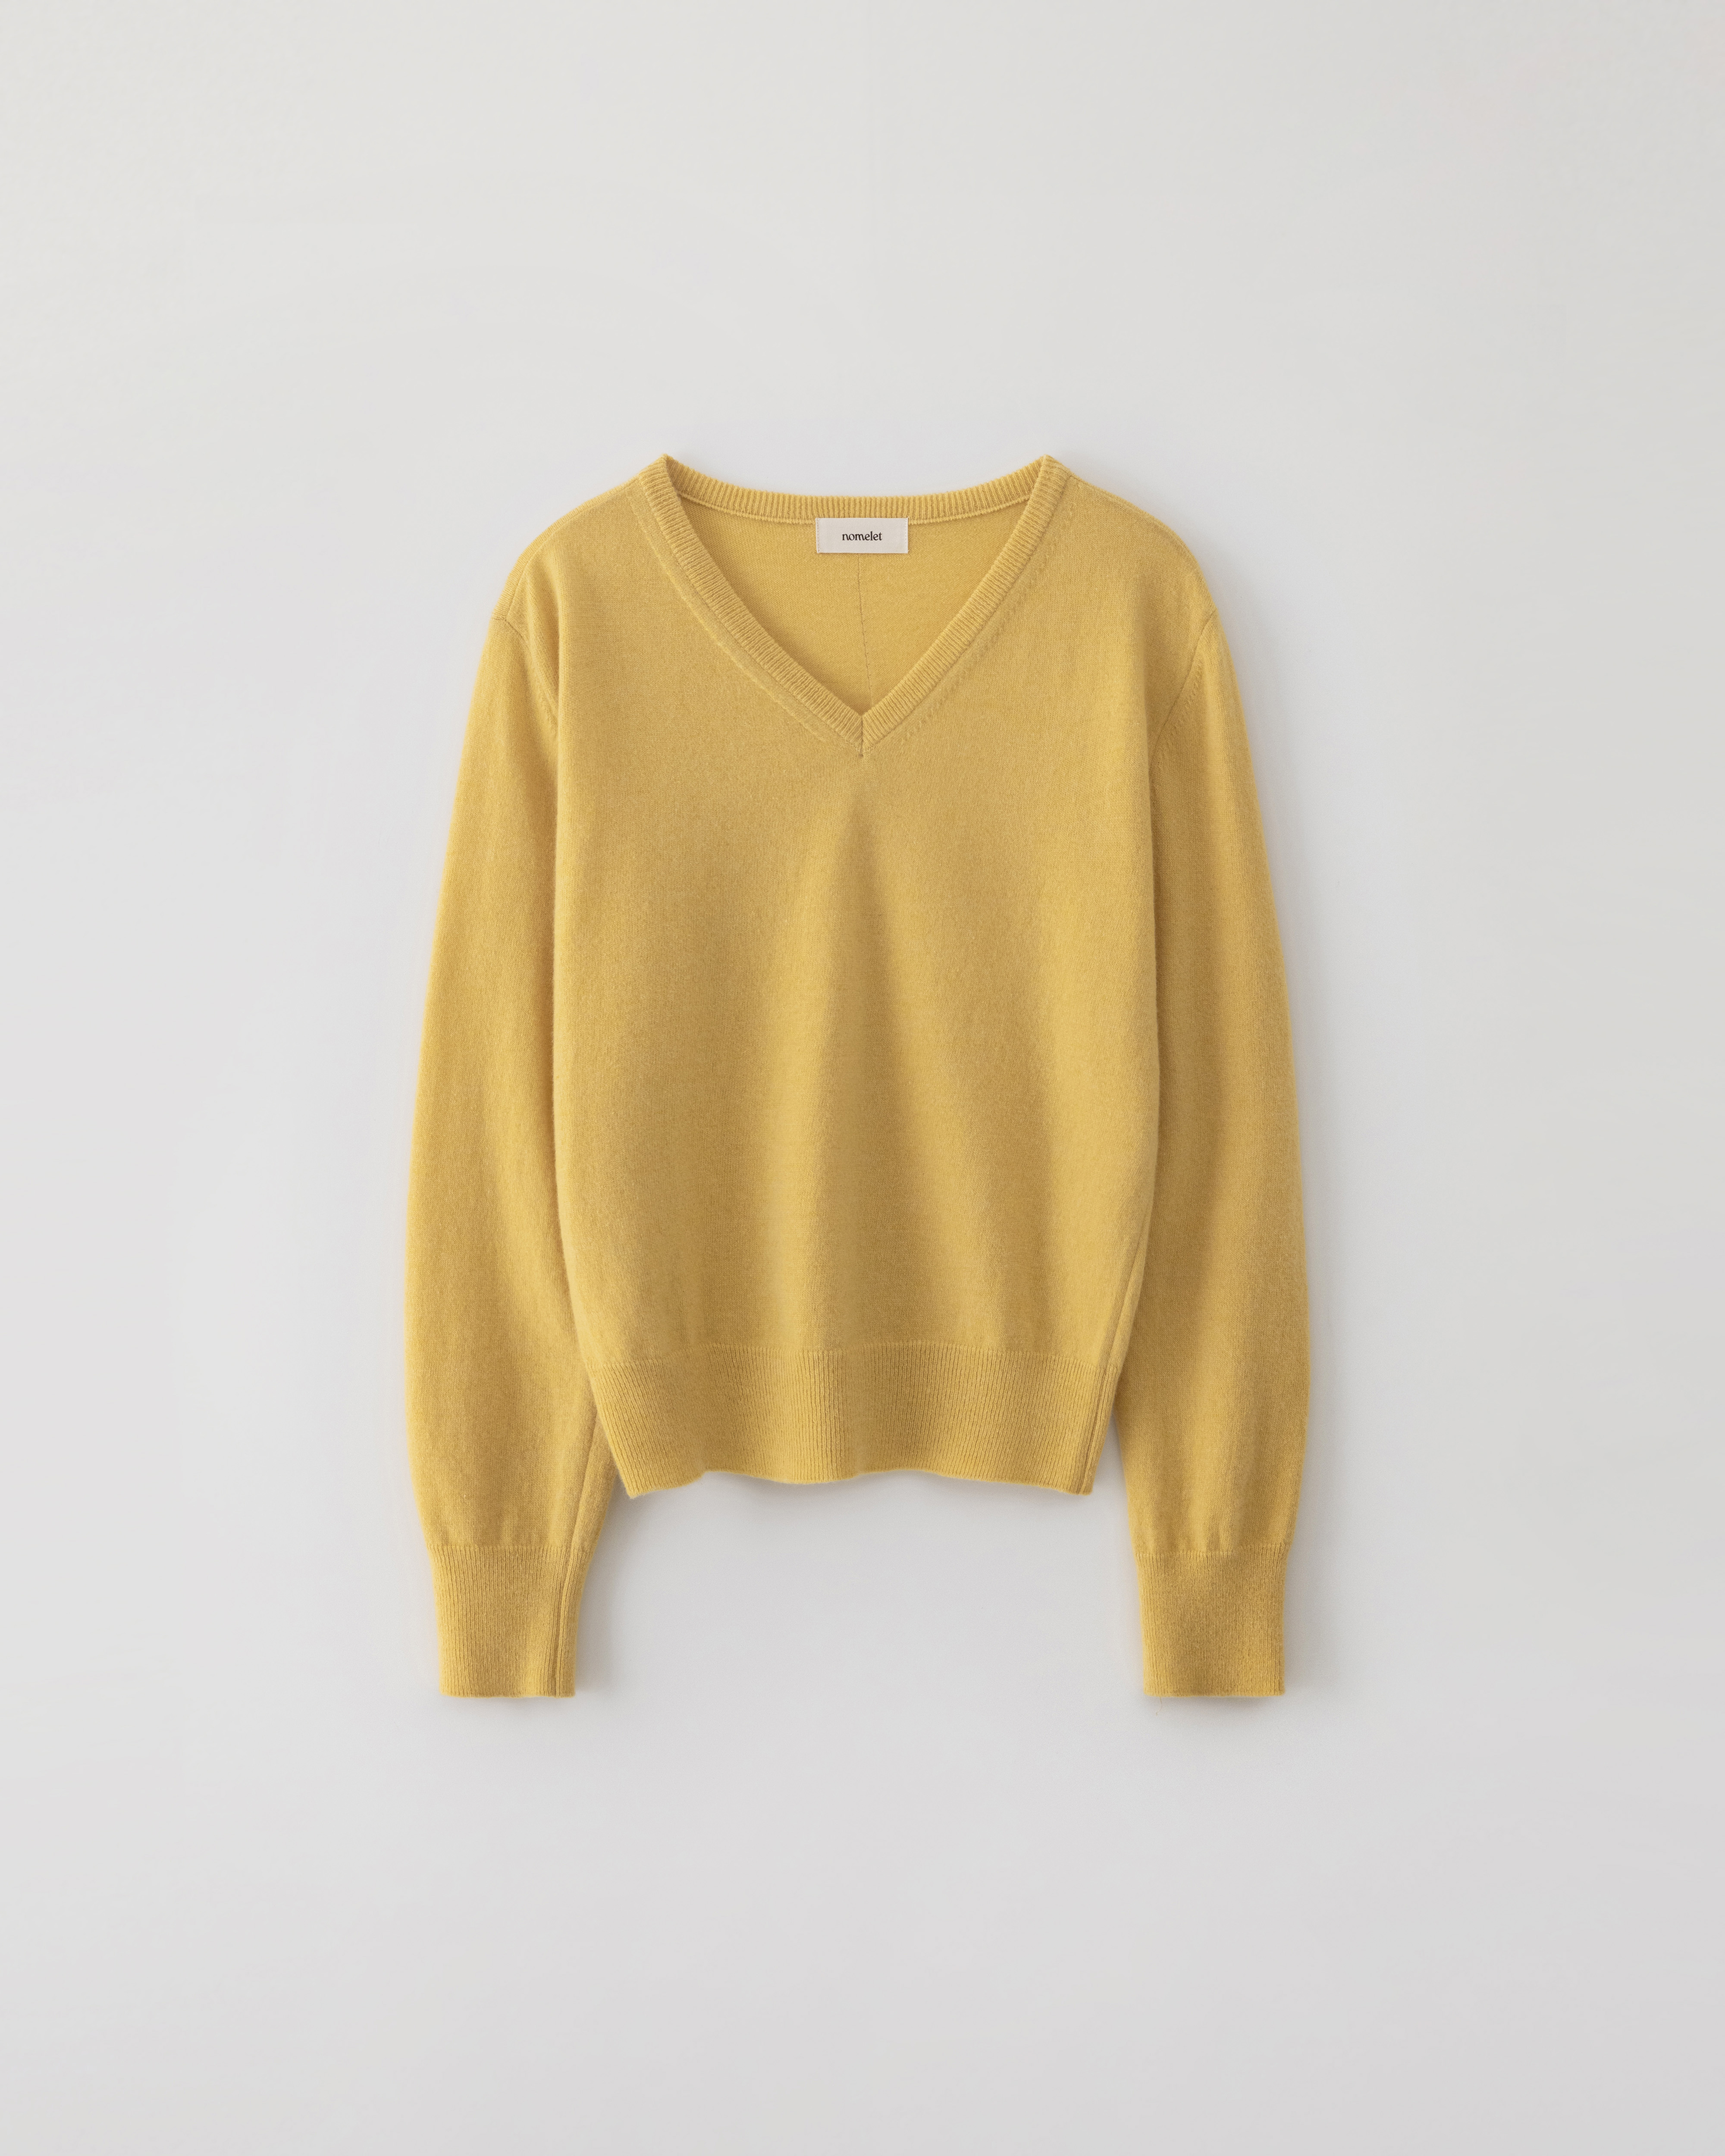 Millie v-neck knit - honey yellow